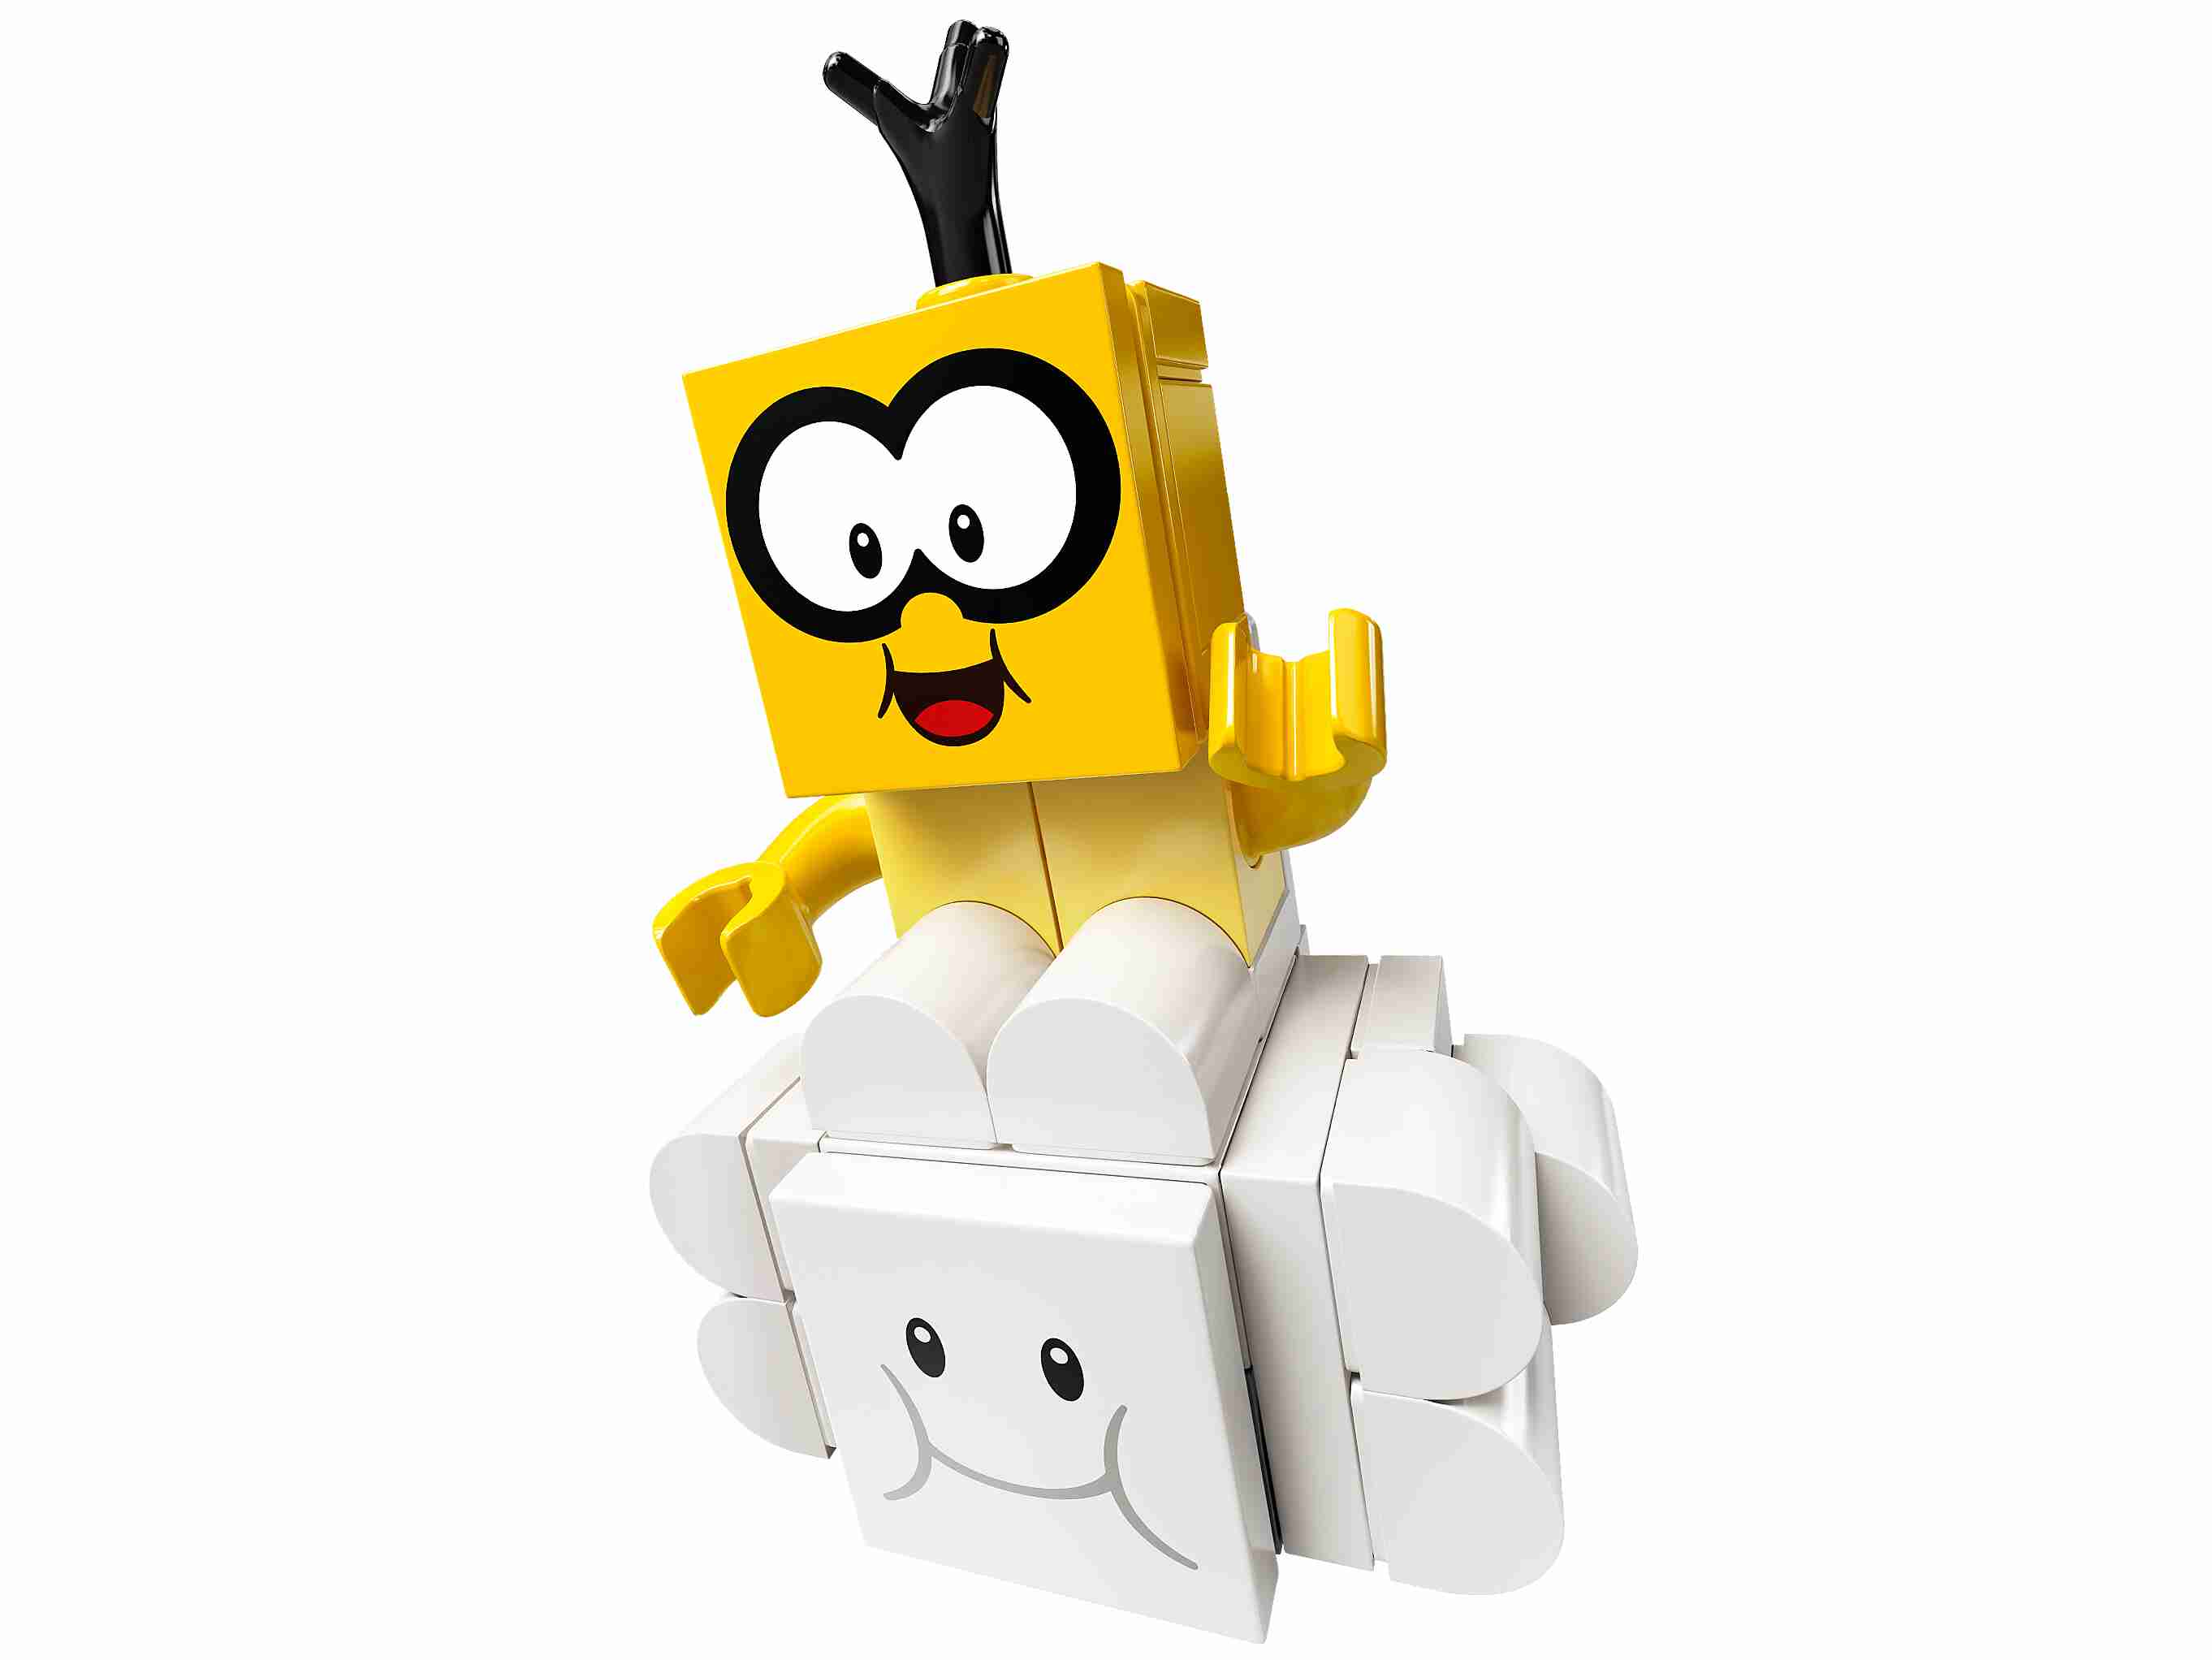 LEGO 71389 Super Mario Lakitus Wolkenwelt – Erweiterungsset